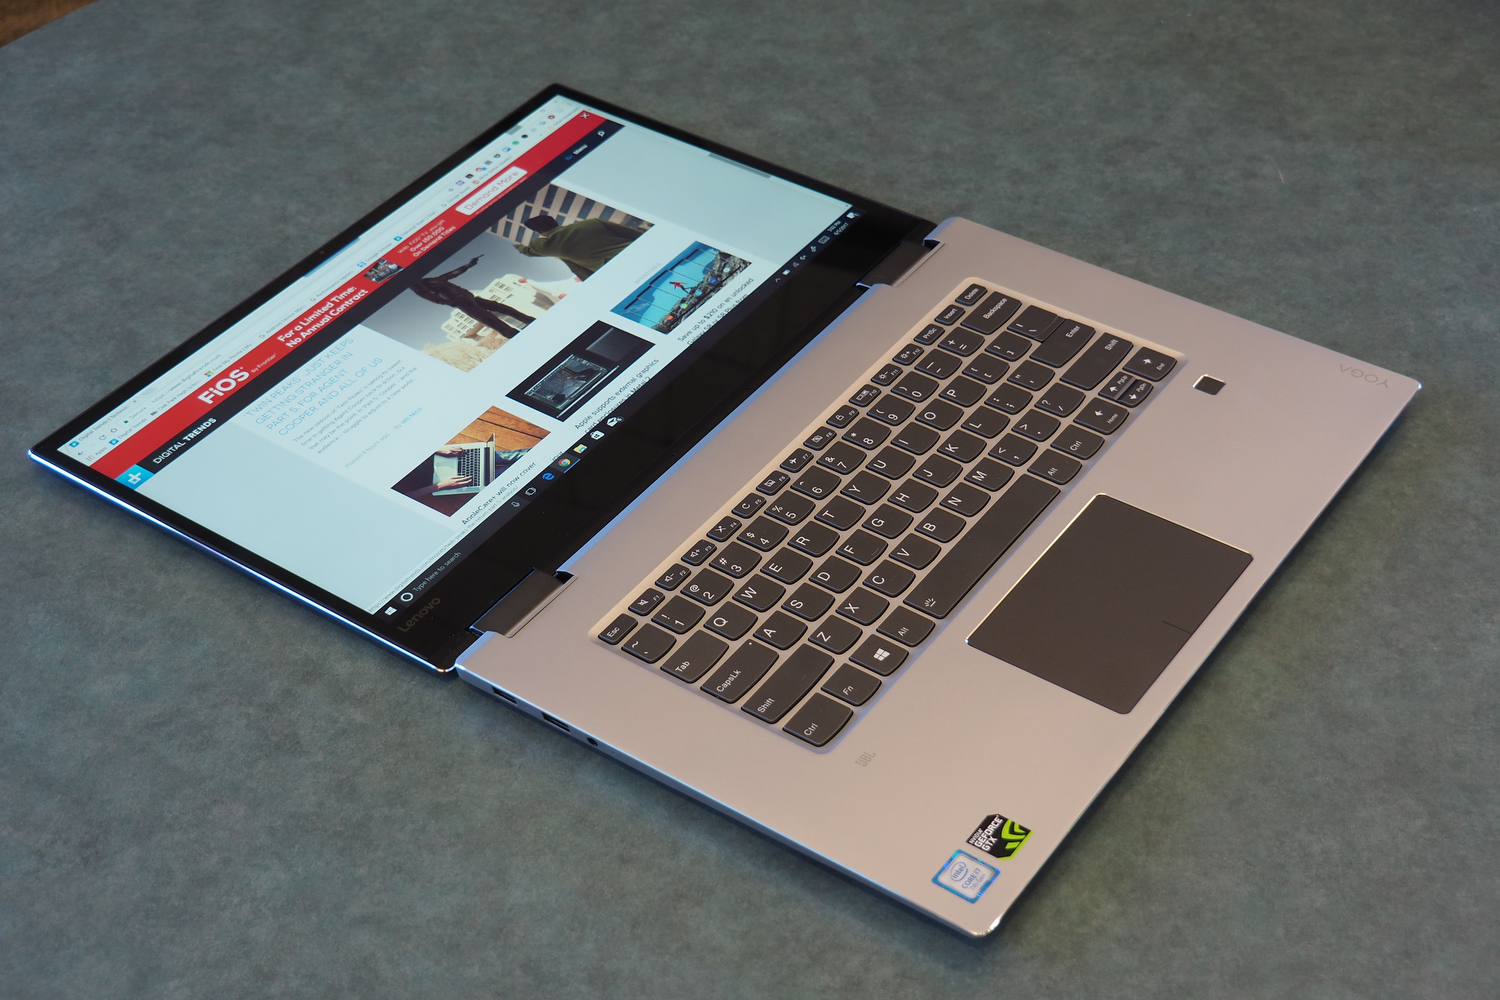 Lenovo Yoga 720 15 2-in-1 Review | Digital Trends